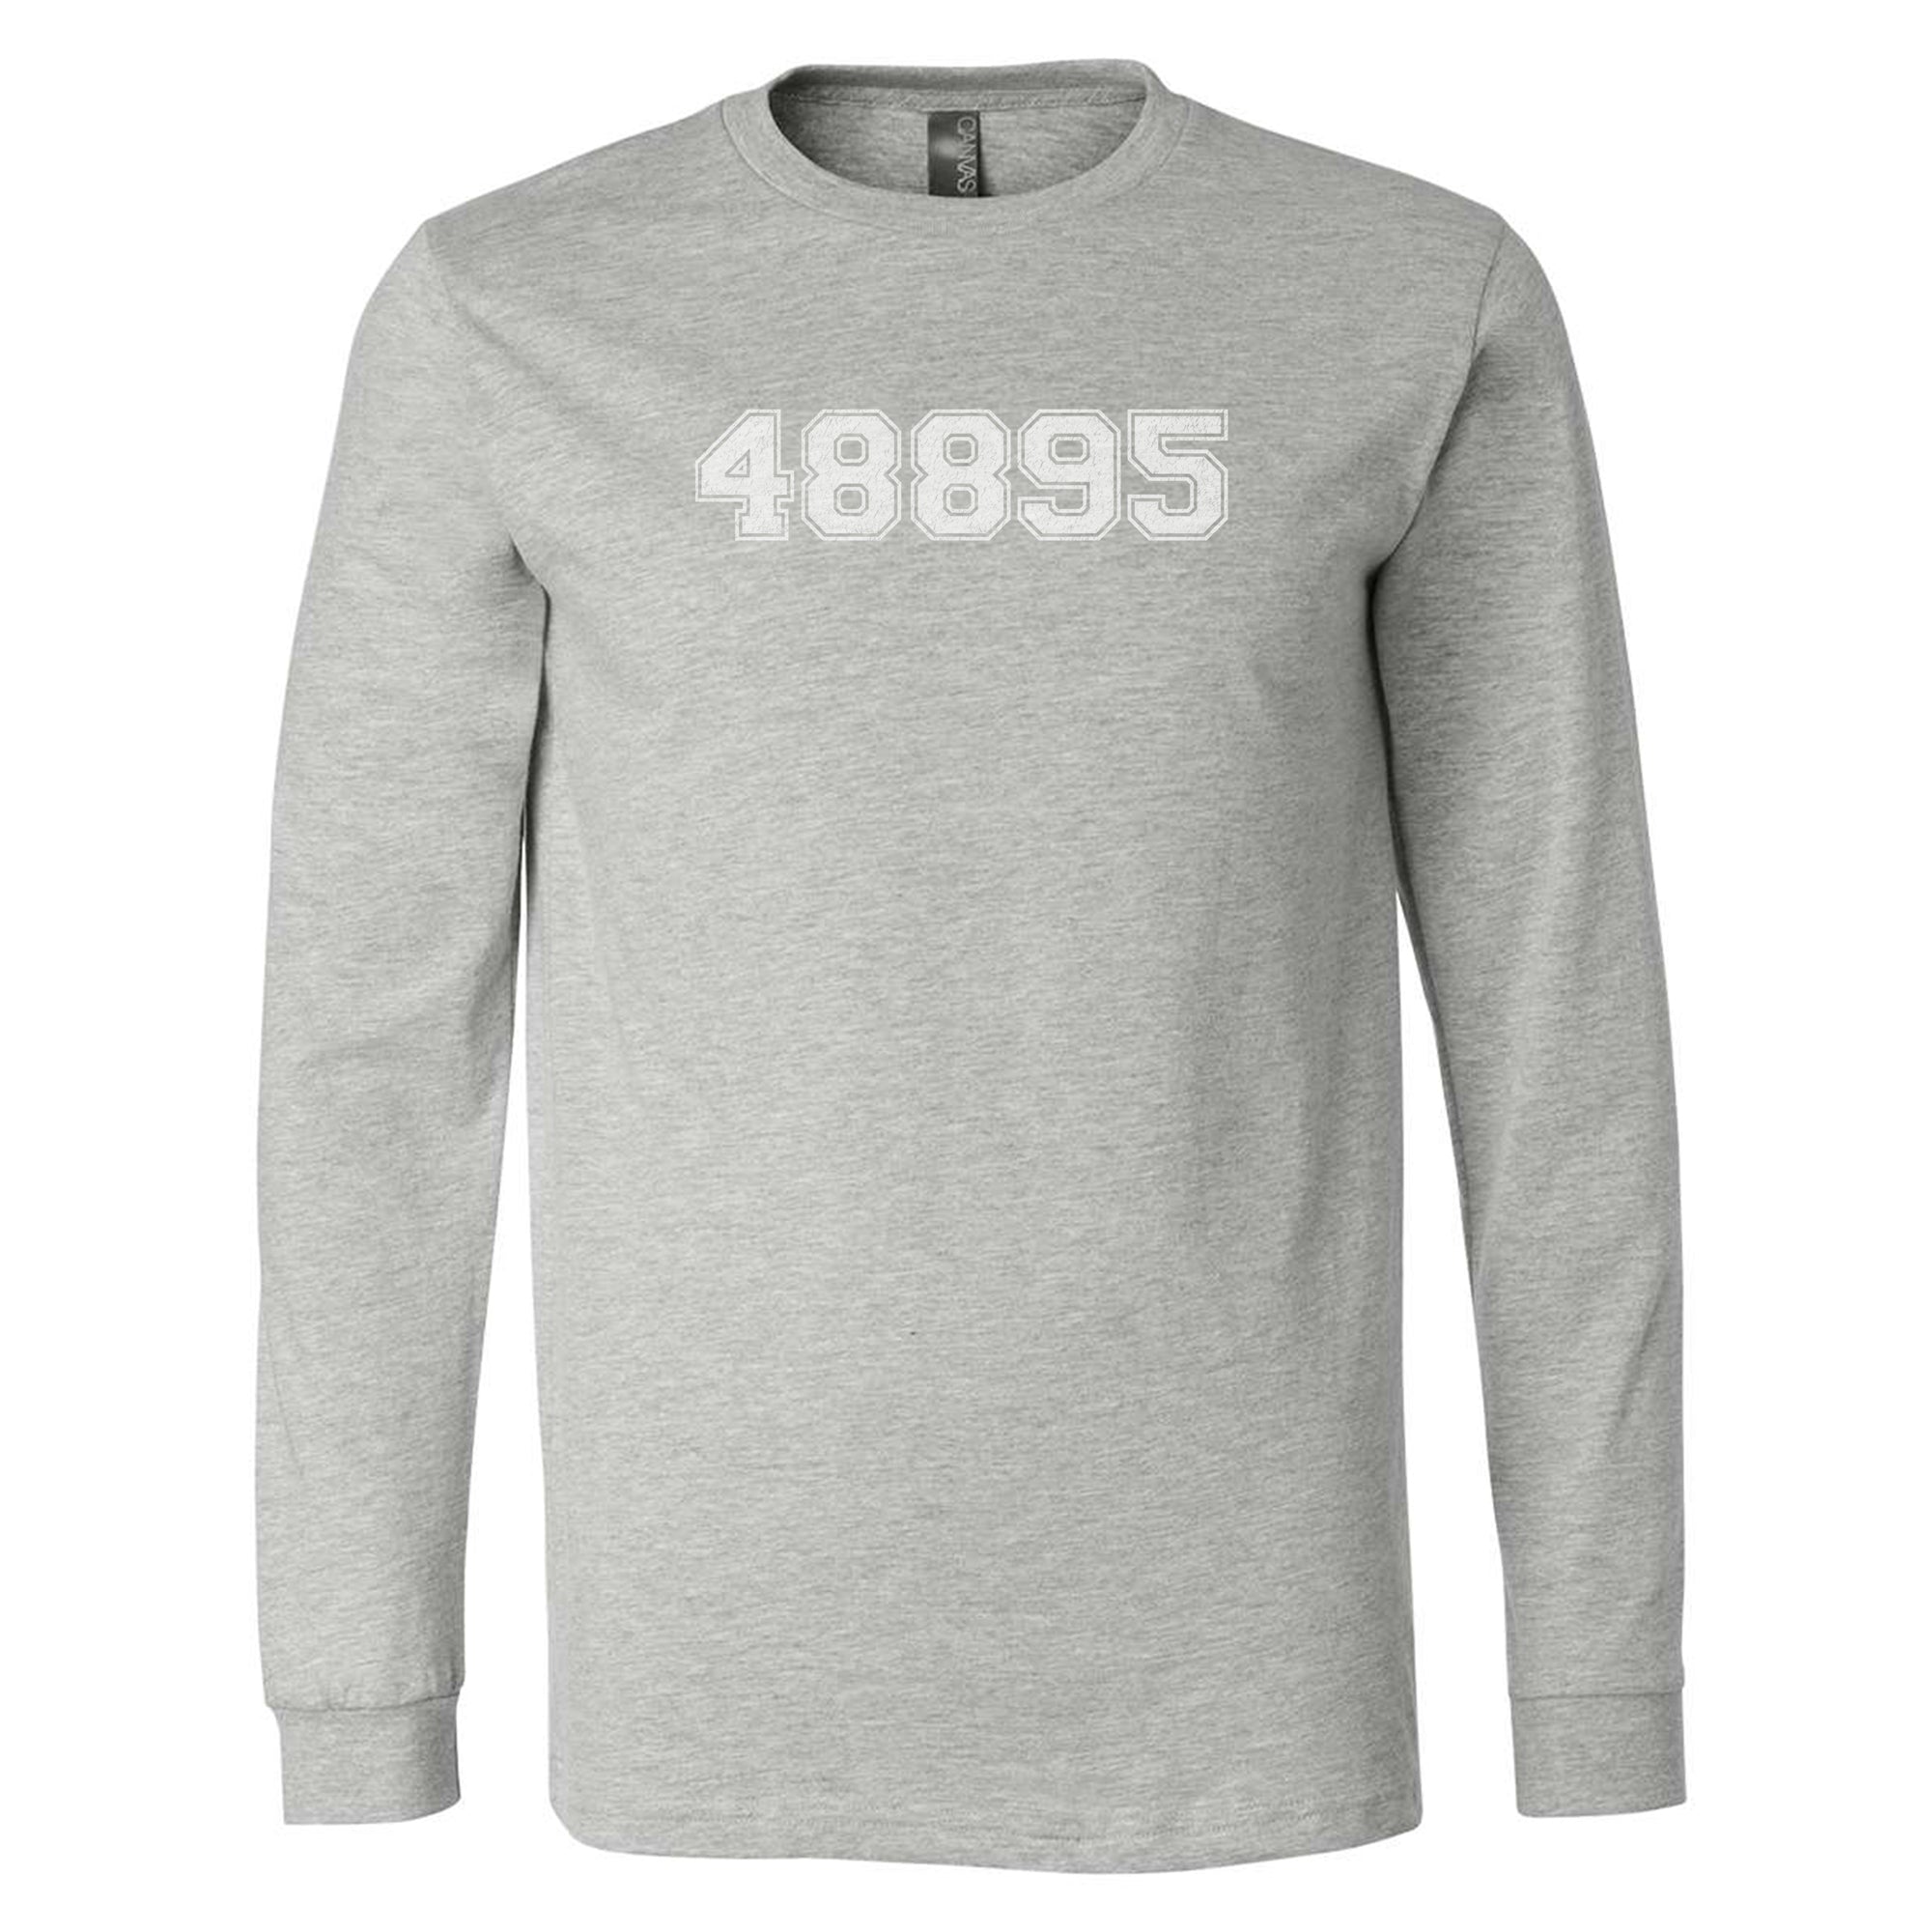 "48895" - Vintage - Blended Adult Long Sleeve